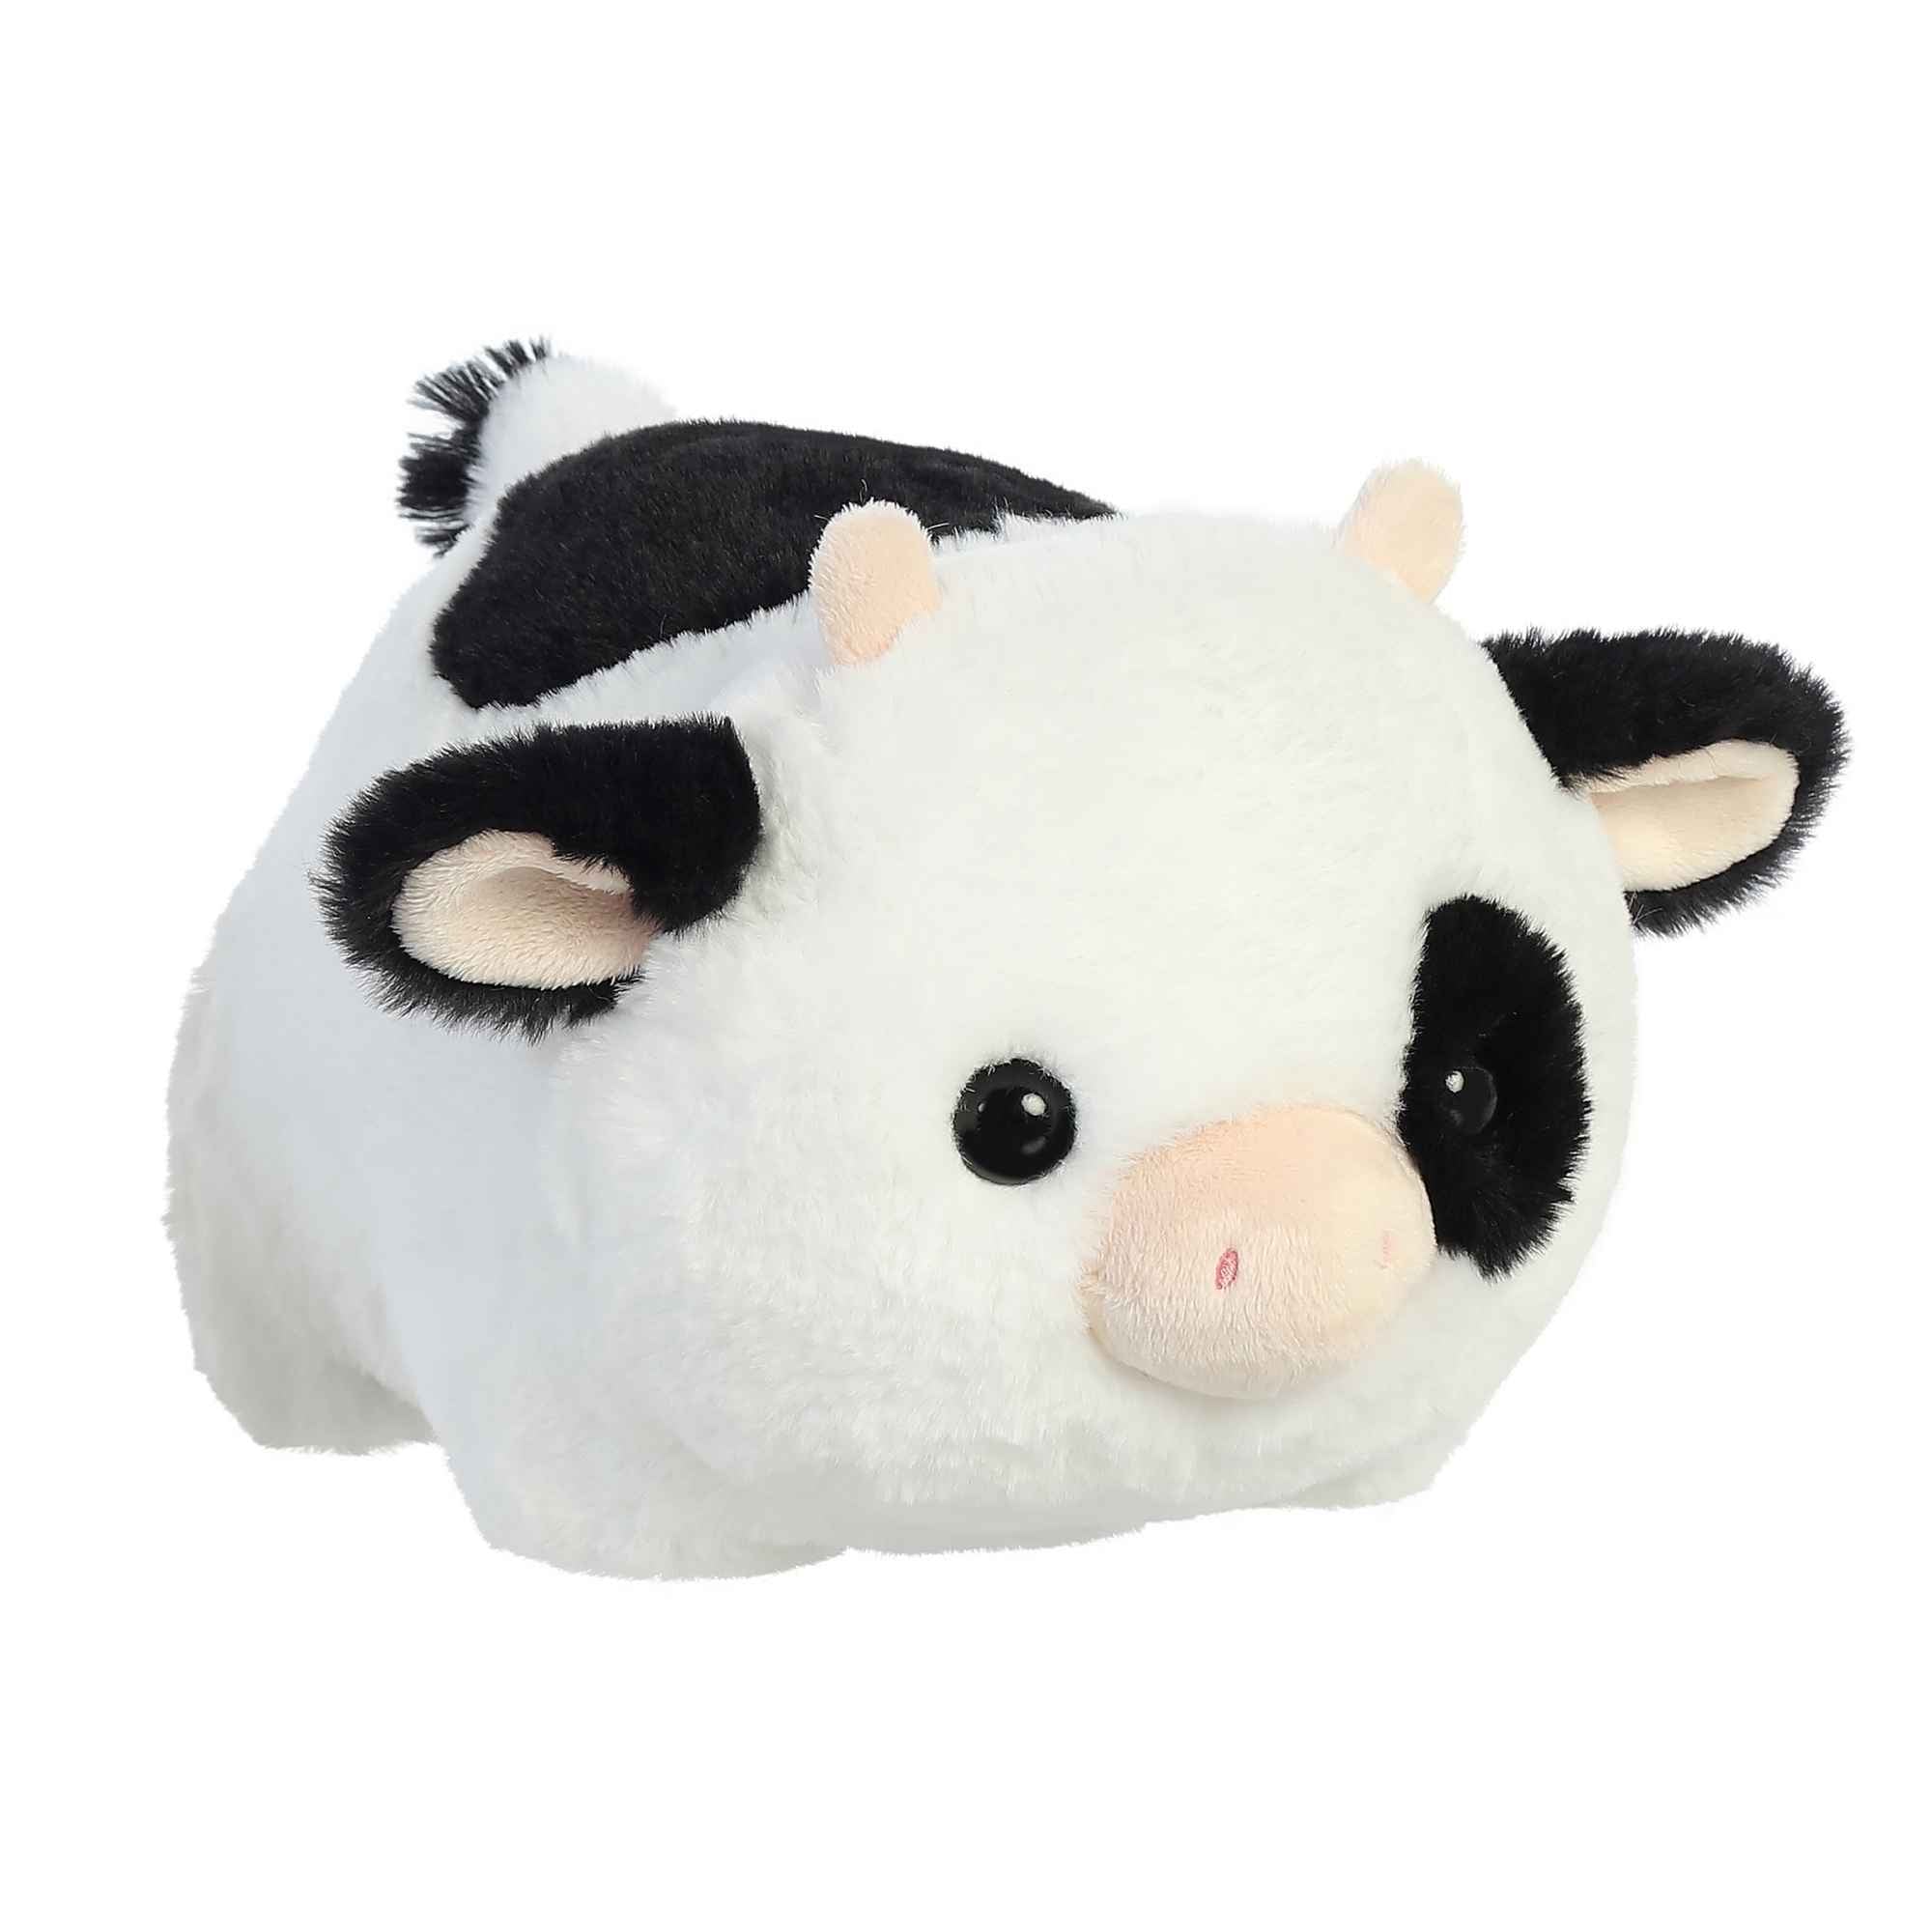 Aurora - Spudsters - 10 Tutie Cow